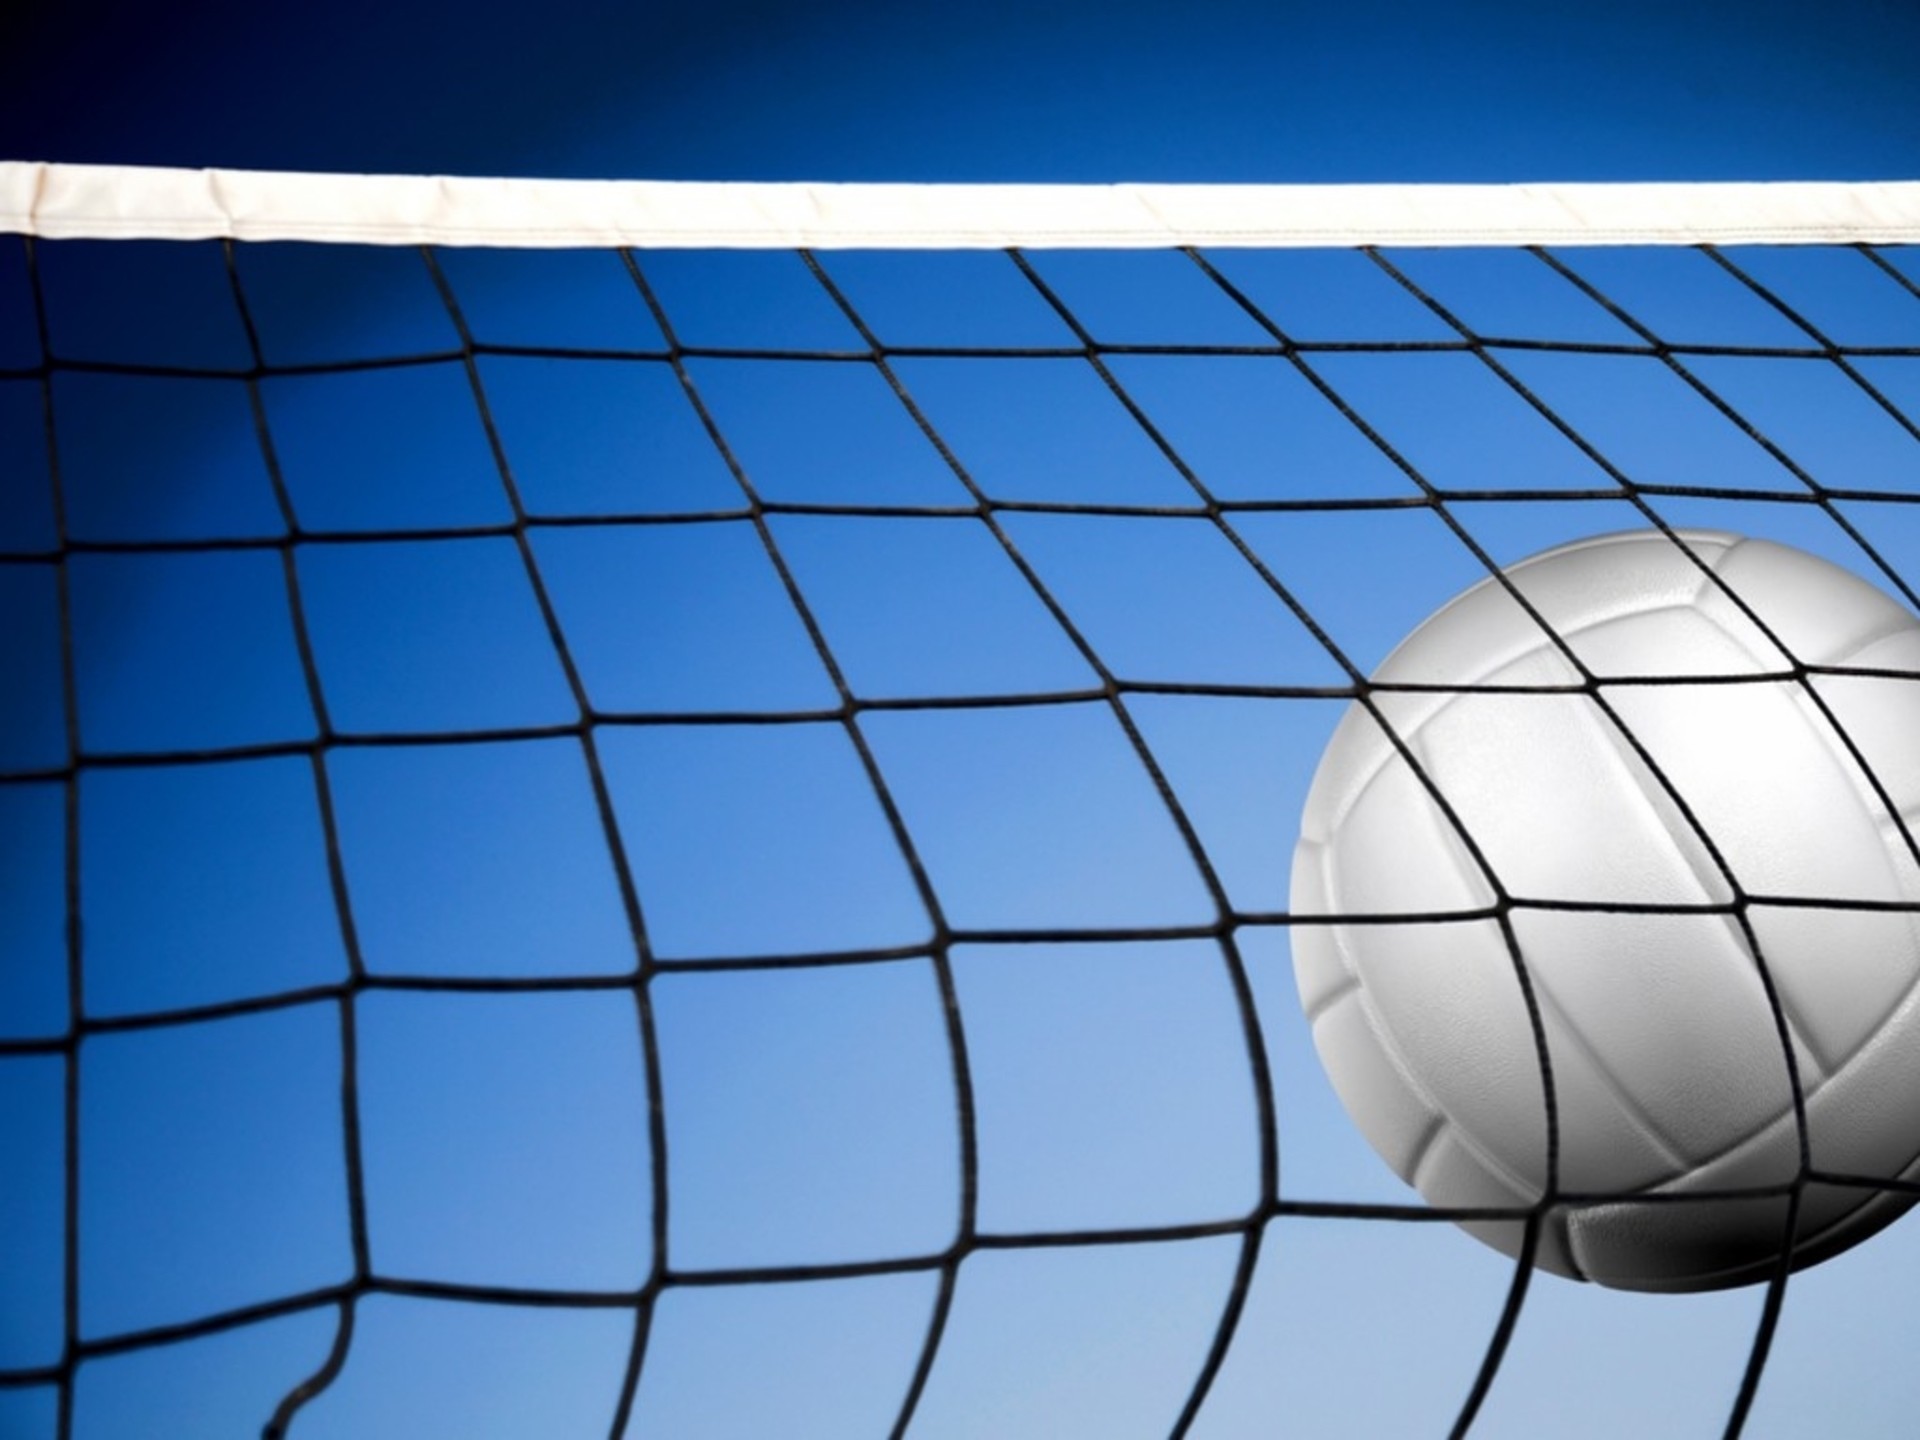 volleyball wallpaper background,net,daytime,ball,blue,goal